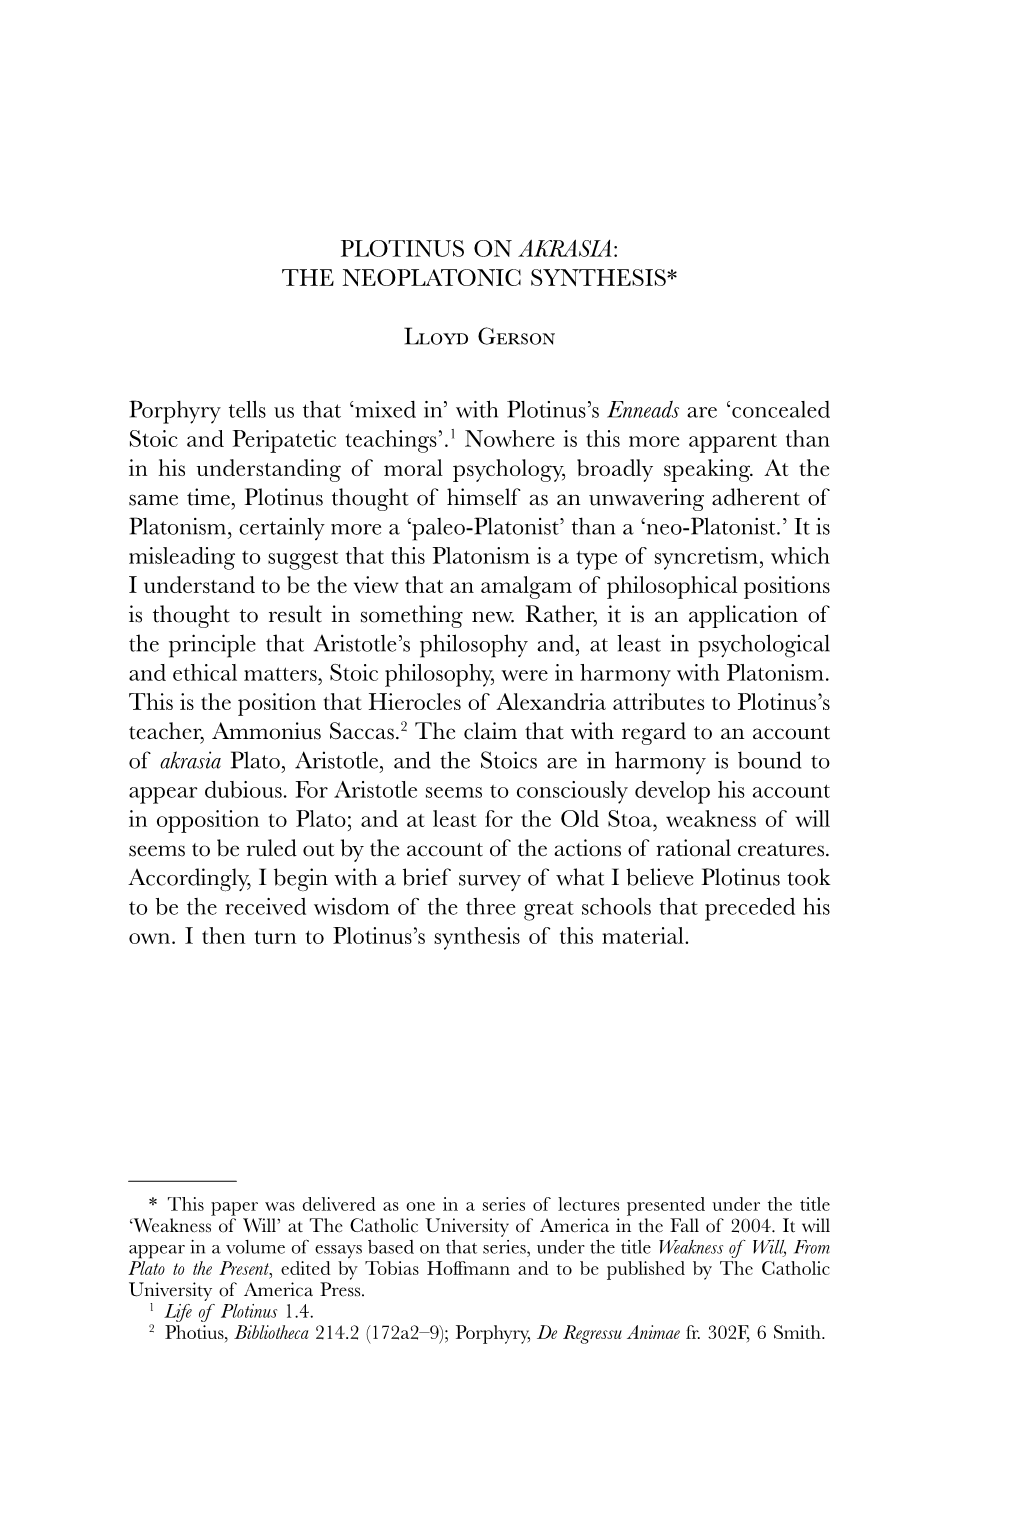 Plotinus on Akrasia: the Neoplatonic Synthesis*